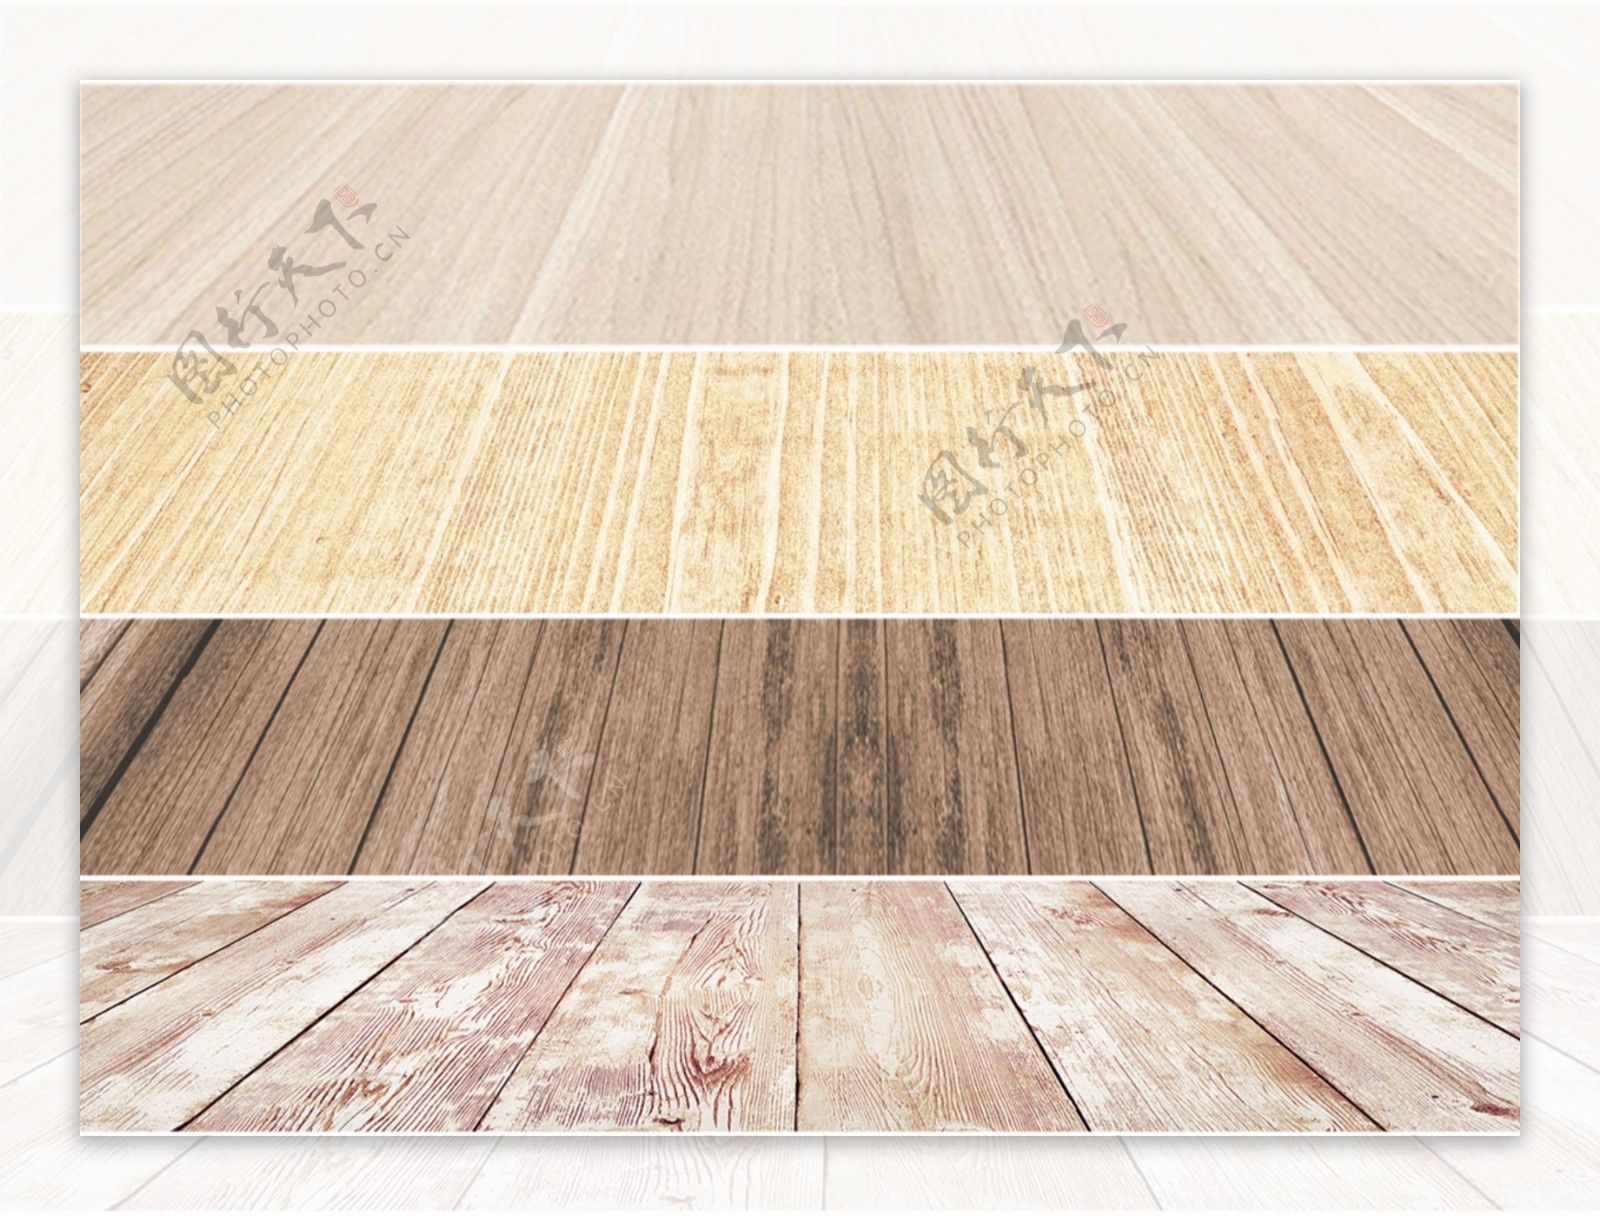 ps木材板材平面图